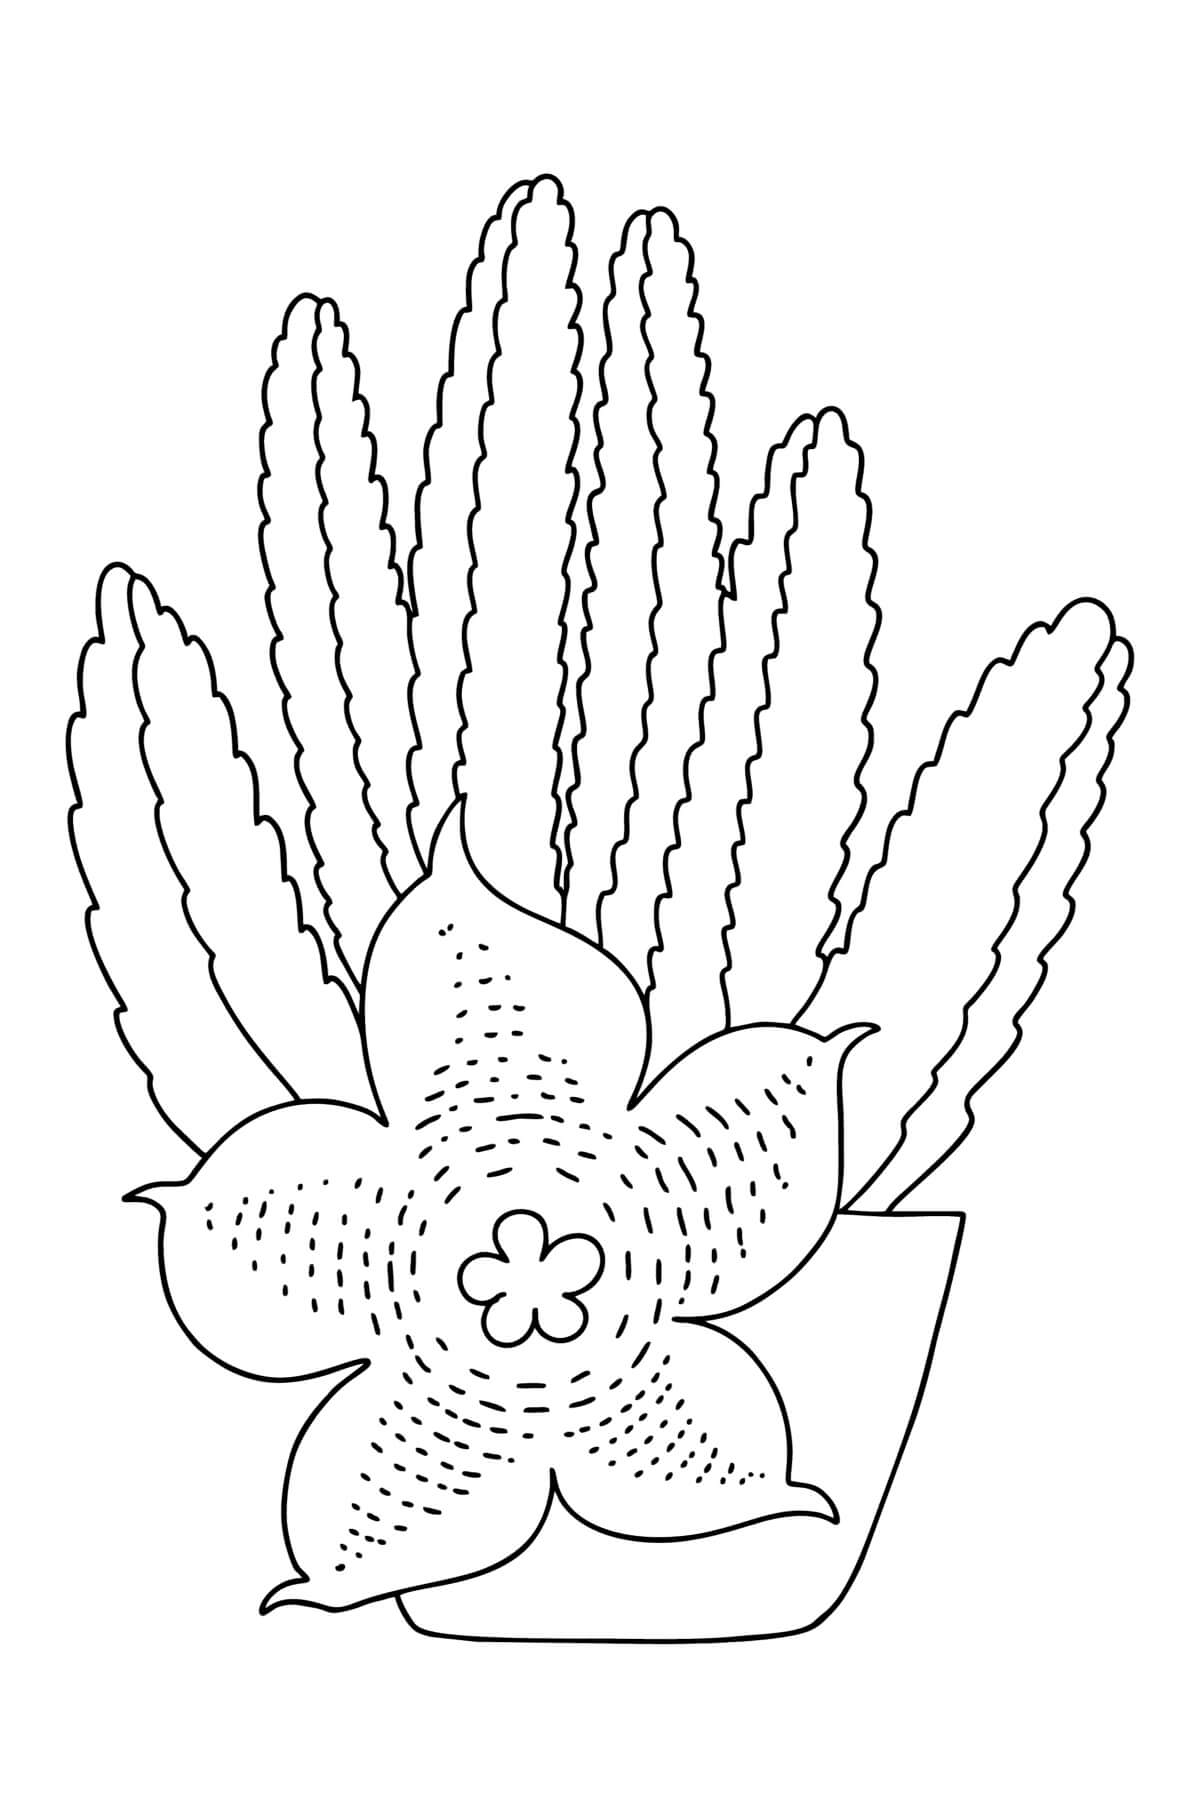 Stapelia-cactus